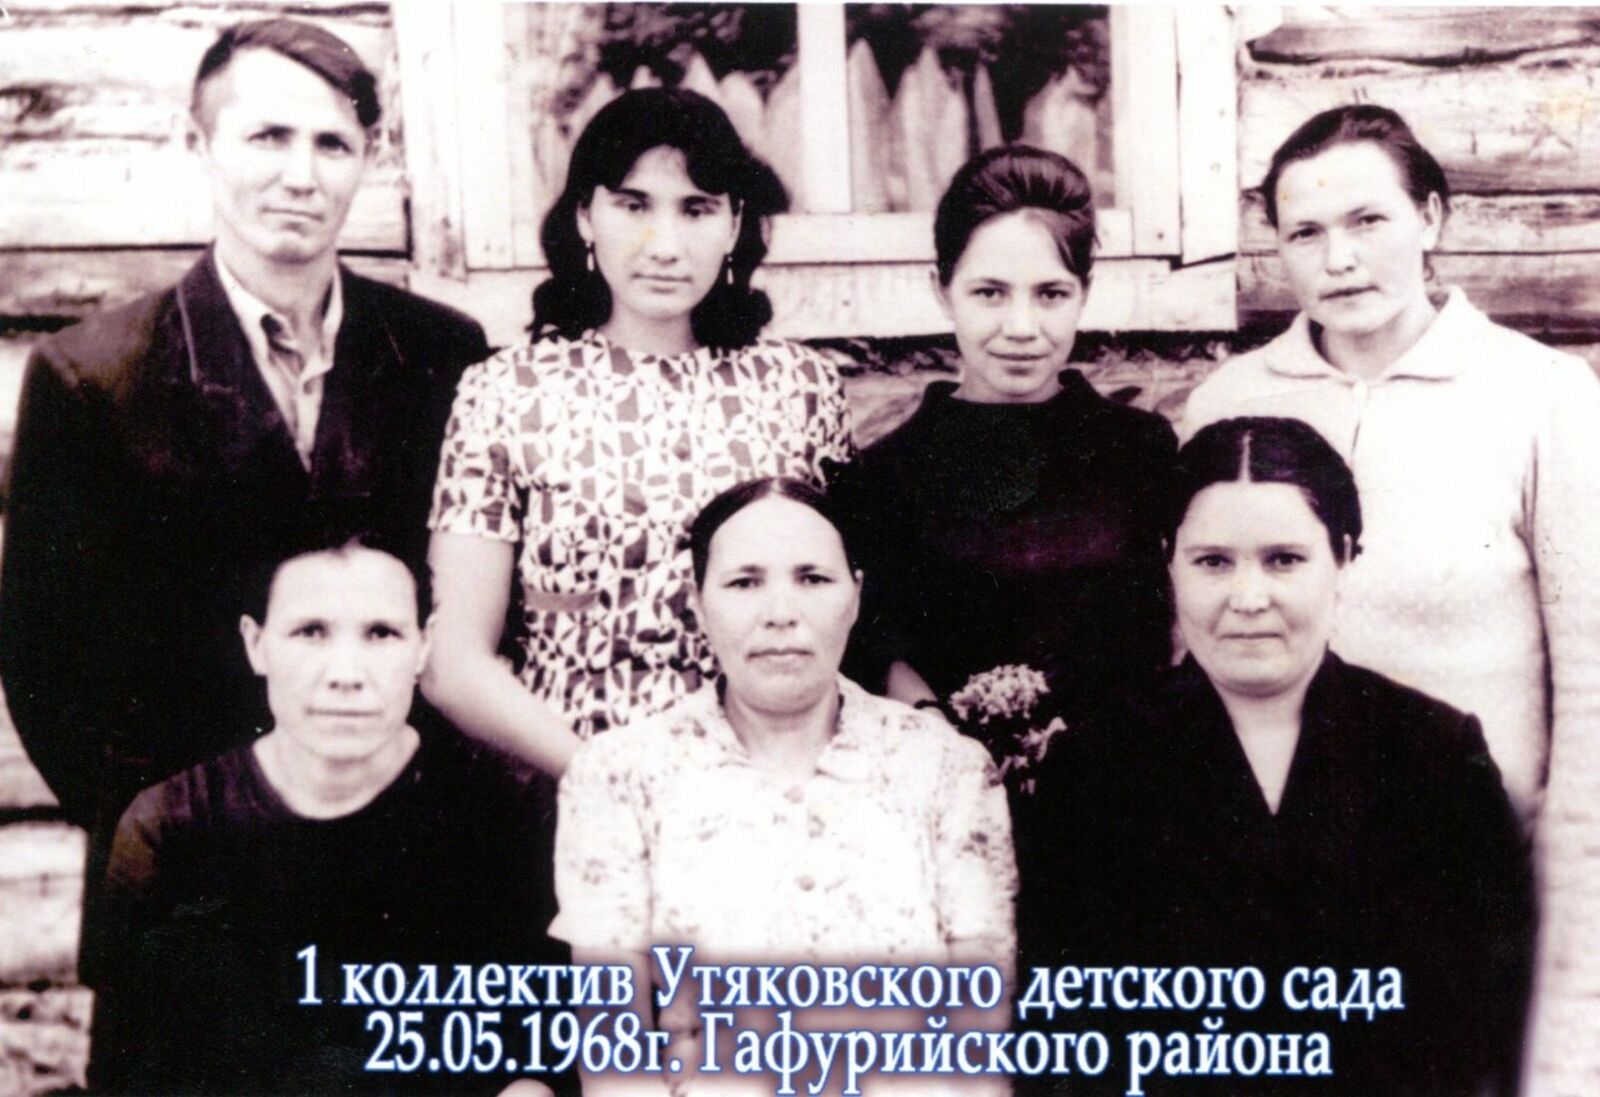 Мавлида Султанова третья слева во втором ряду.